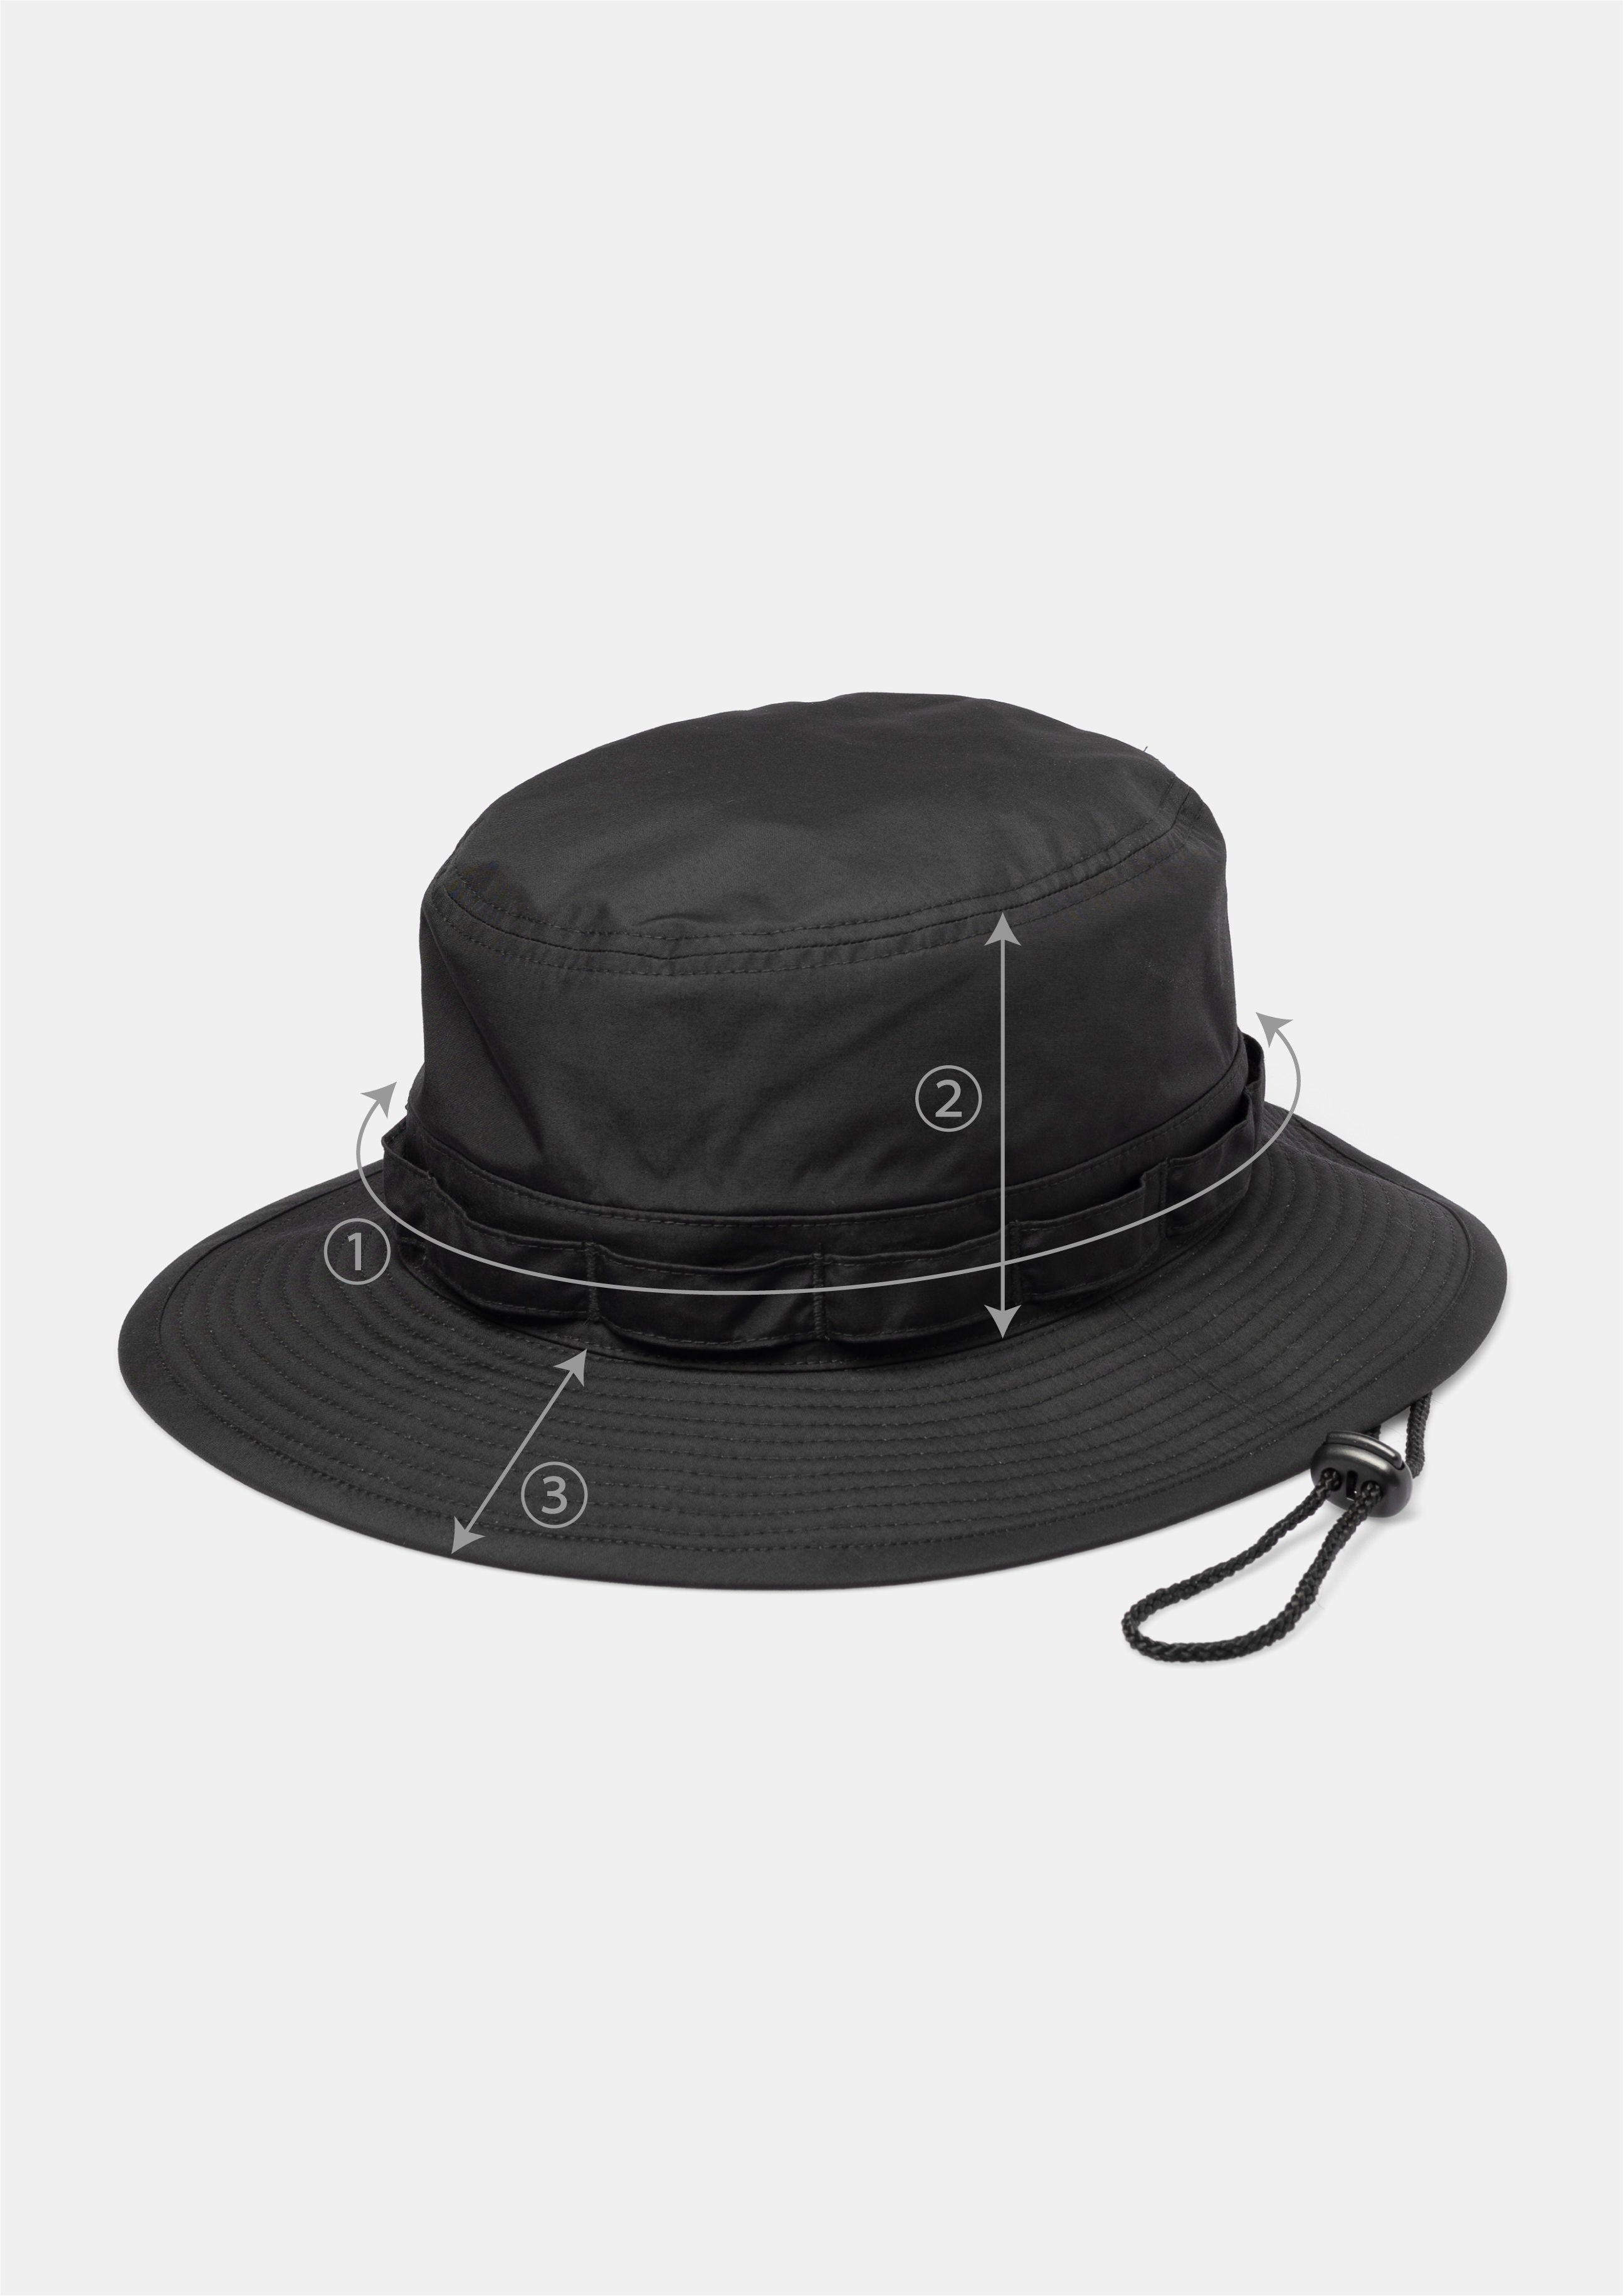 UNNAMED HEADWEAR DEEP BLACKアンネームドヘッドウェア - 帽子